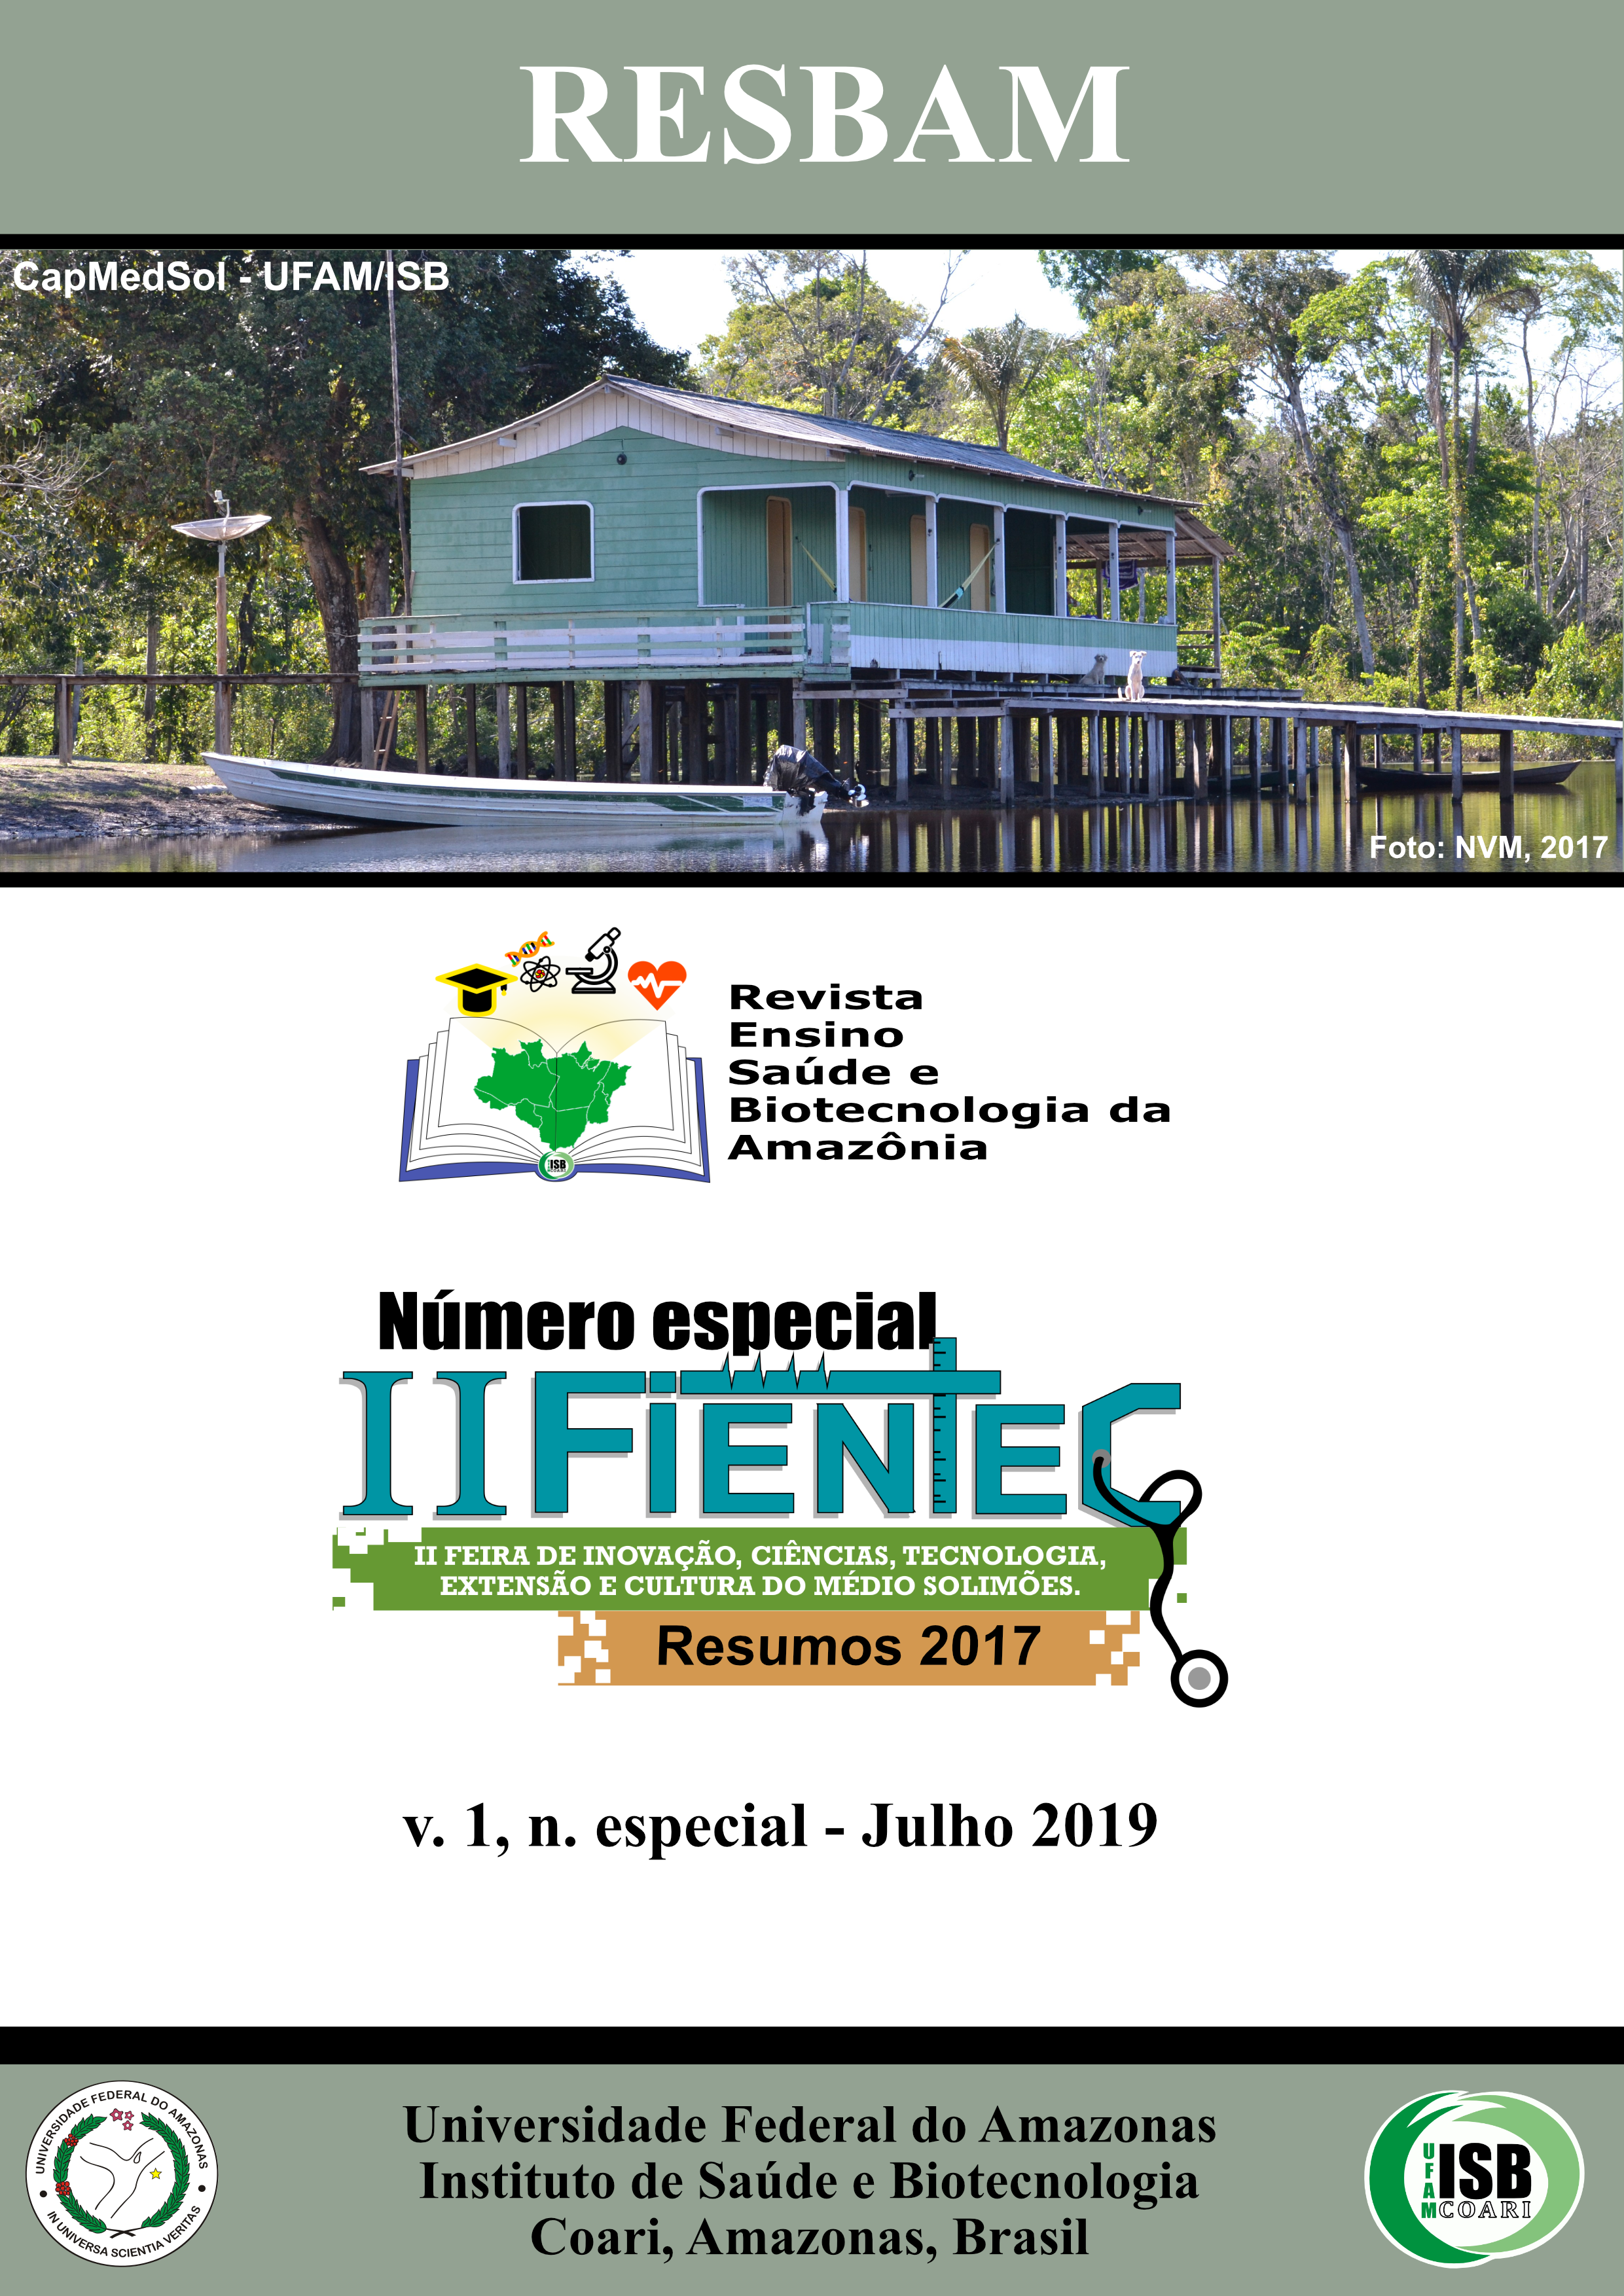 					Visualizar v. 1 n. especial (2019): Revista Ensino, Saúde e Biotecnologia da Amazônia, Coari - AM, v. 1, n. especial, Julho 2019 - II FIENTEC (2017)
				